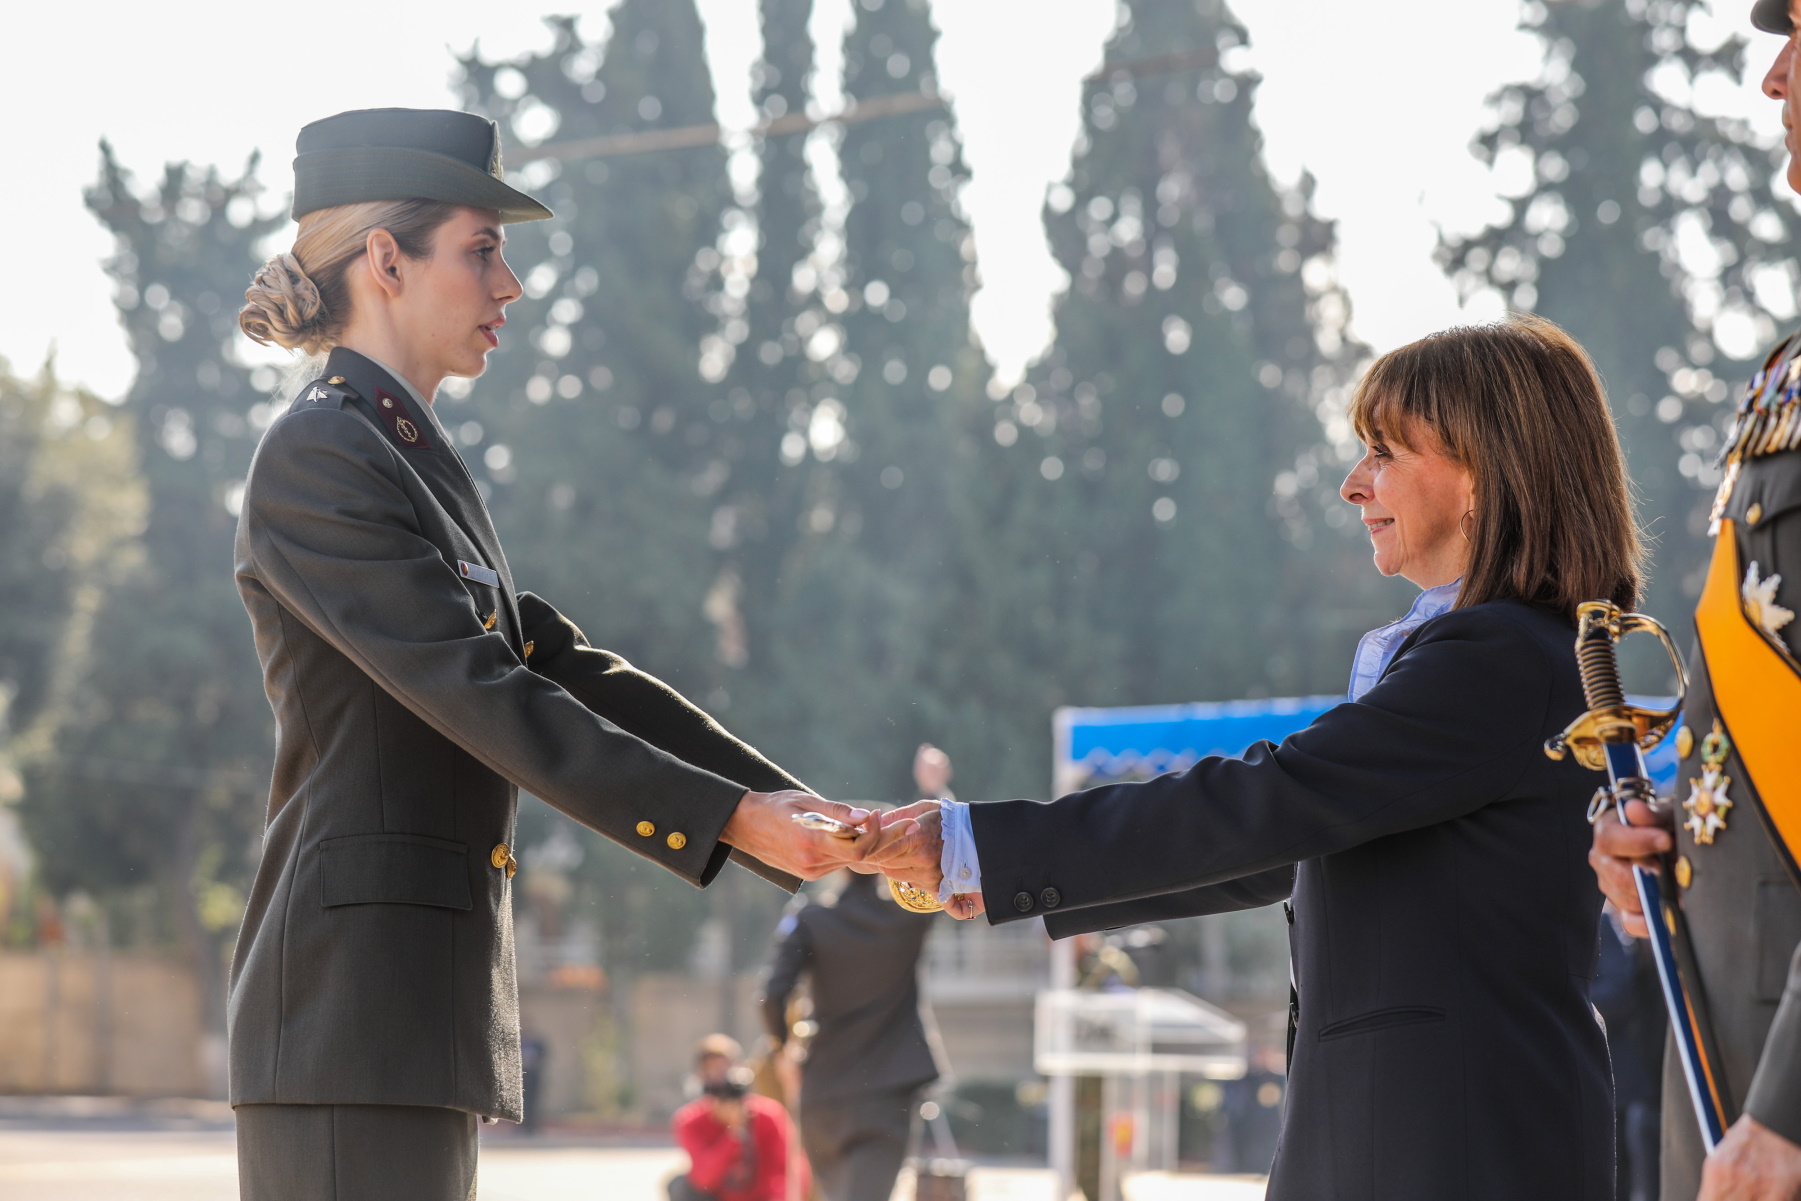 Κατερίνα Σακελλαροπούλου: Έδωσε τα ξίφη σε 60 νέους αξιωματικούς της ΣΣΑΣ – Εικόνες εθνικής υπερηφάνειας